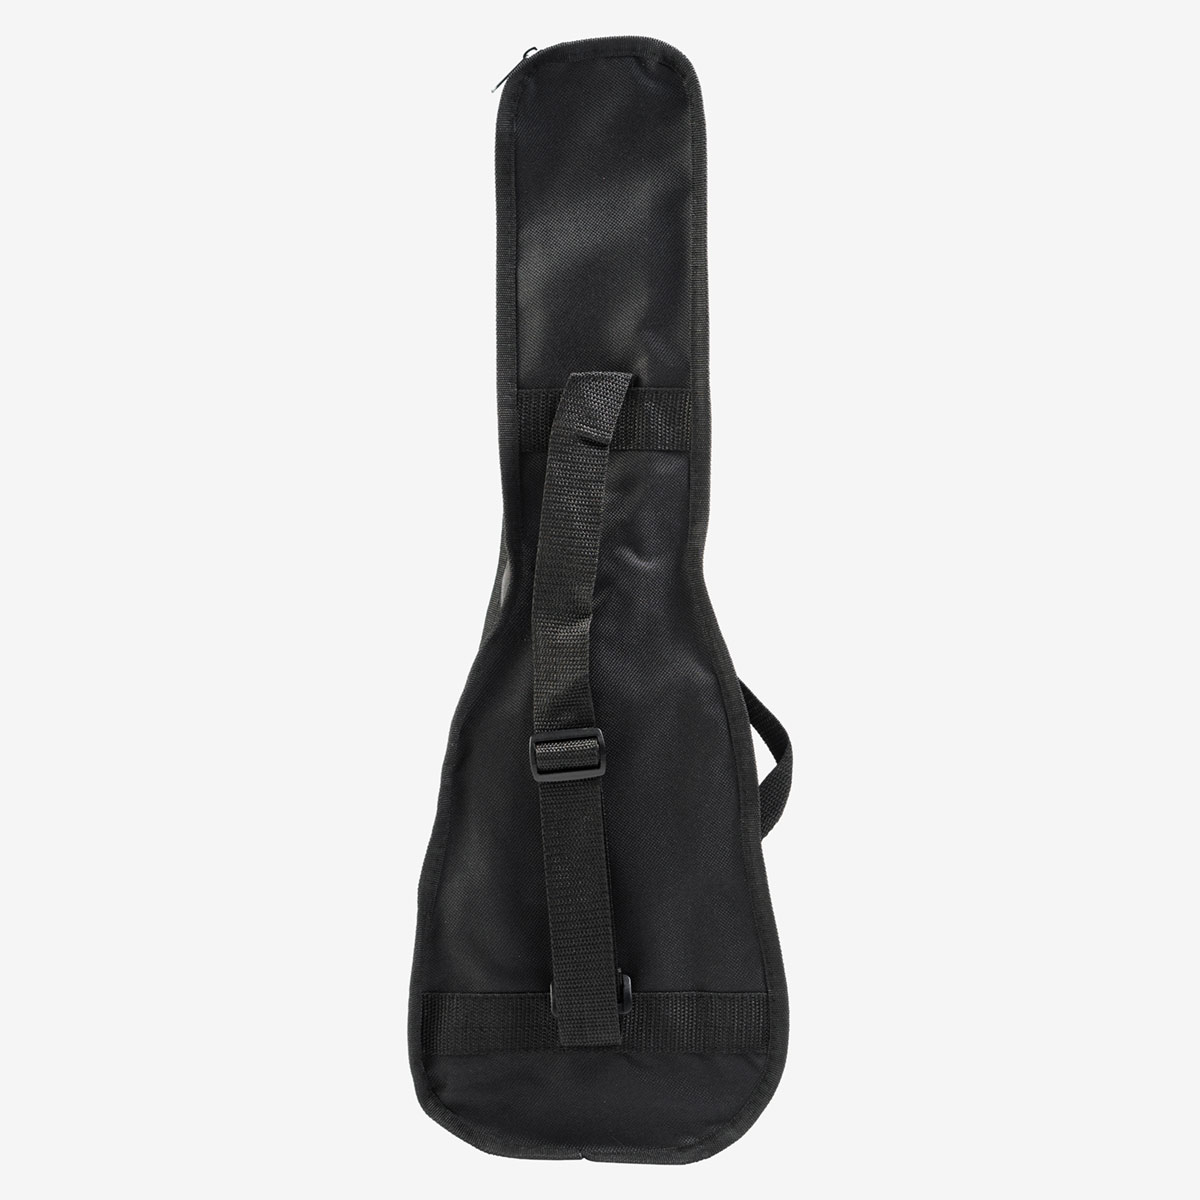 Fender x Hard Rock Venice Ukelee in Satin Black with Bag image number 5